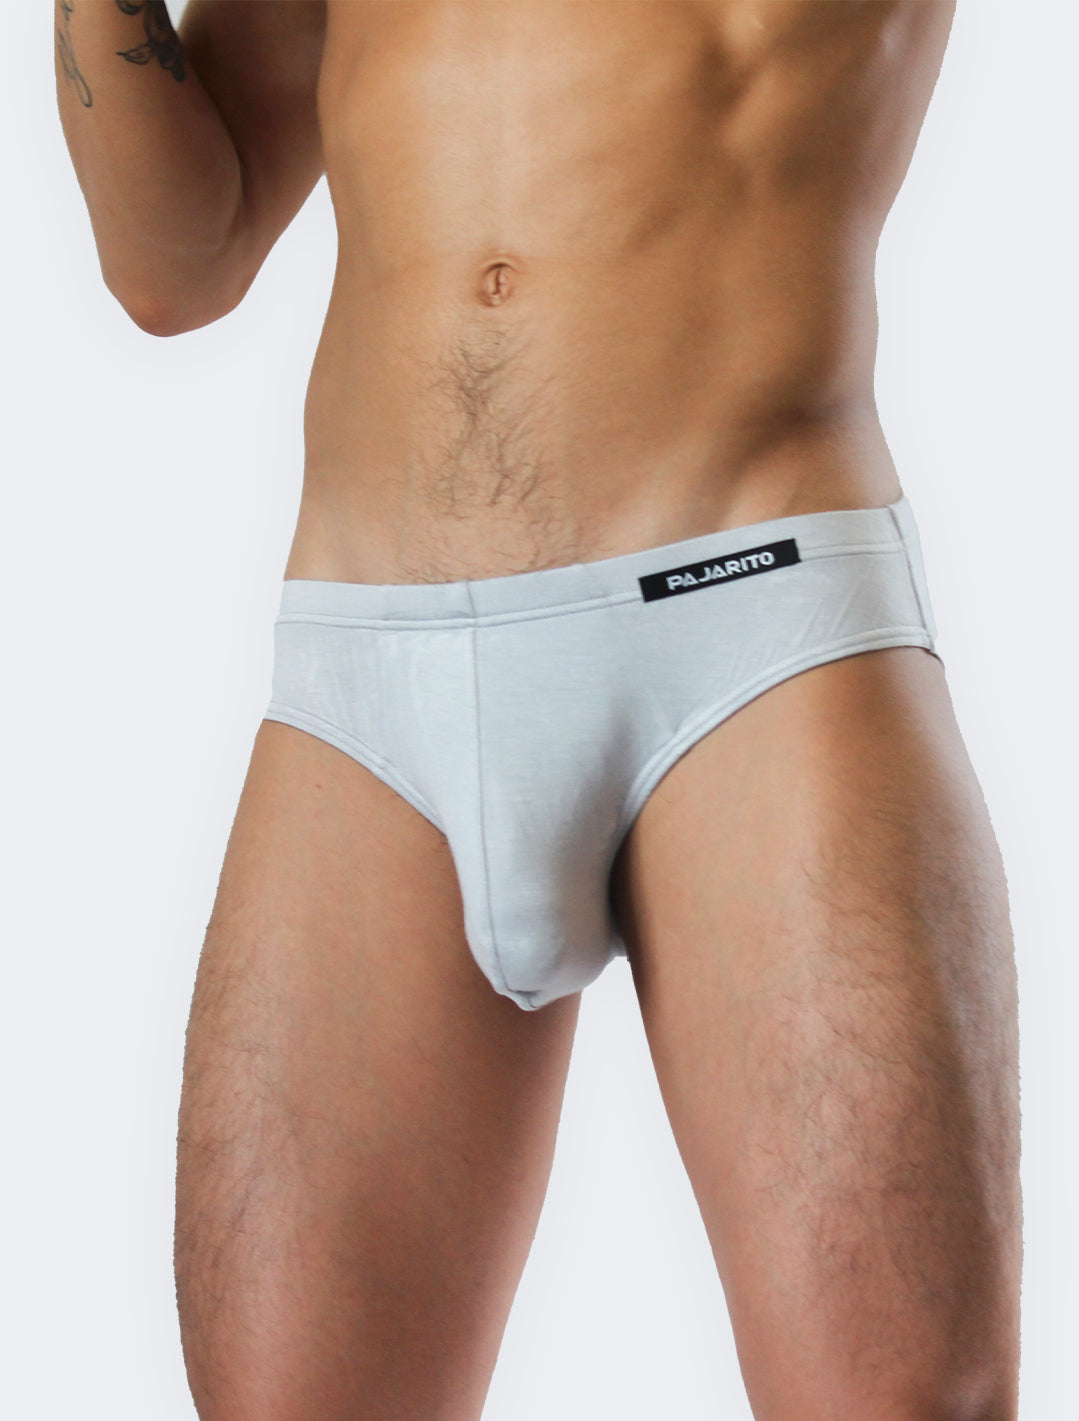 comfortable soft breathable underwear for men Pajarito men grey by Pajarito on @Shop.Pajarito